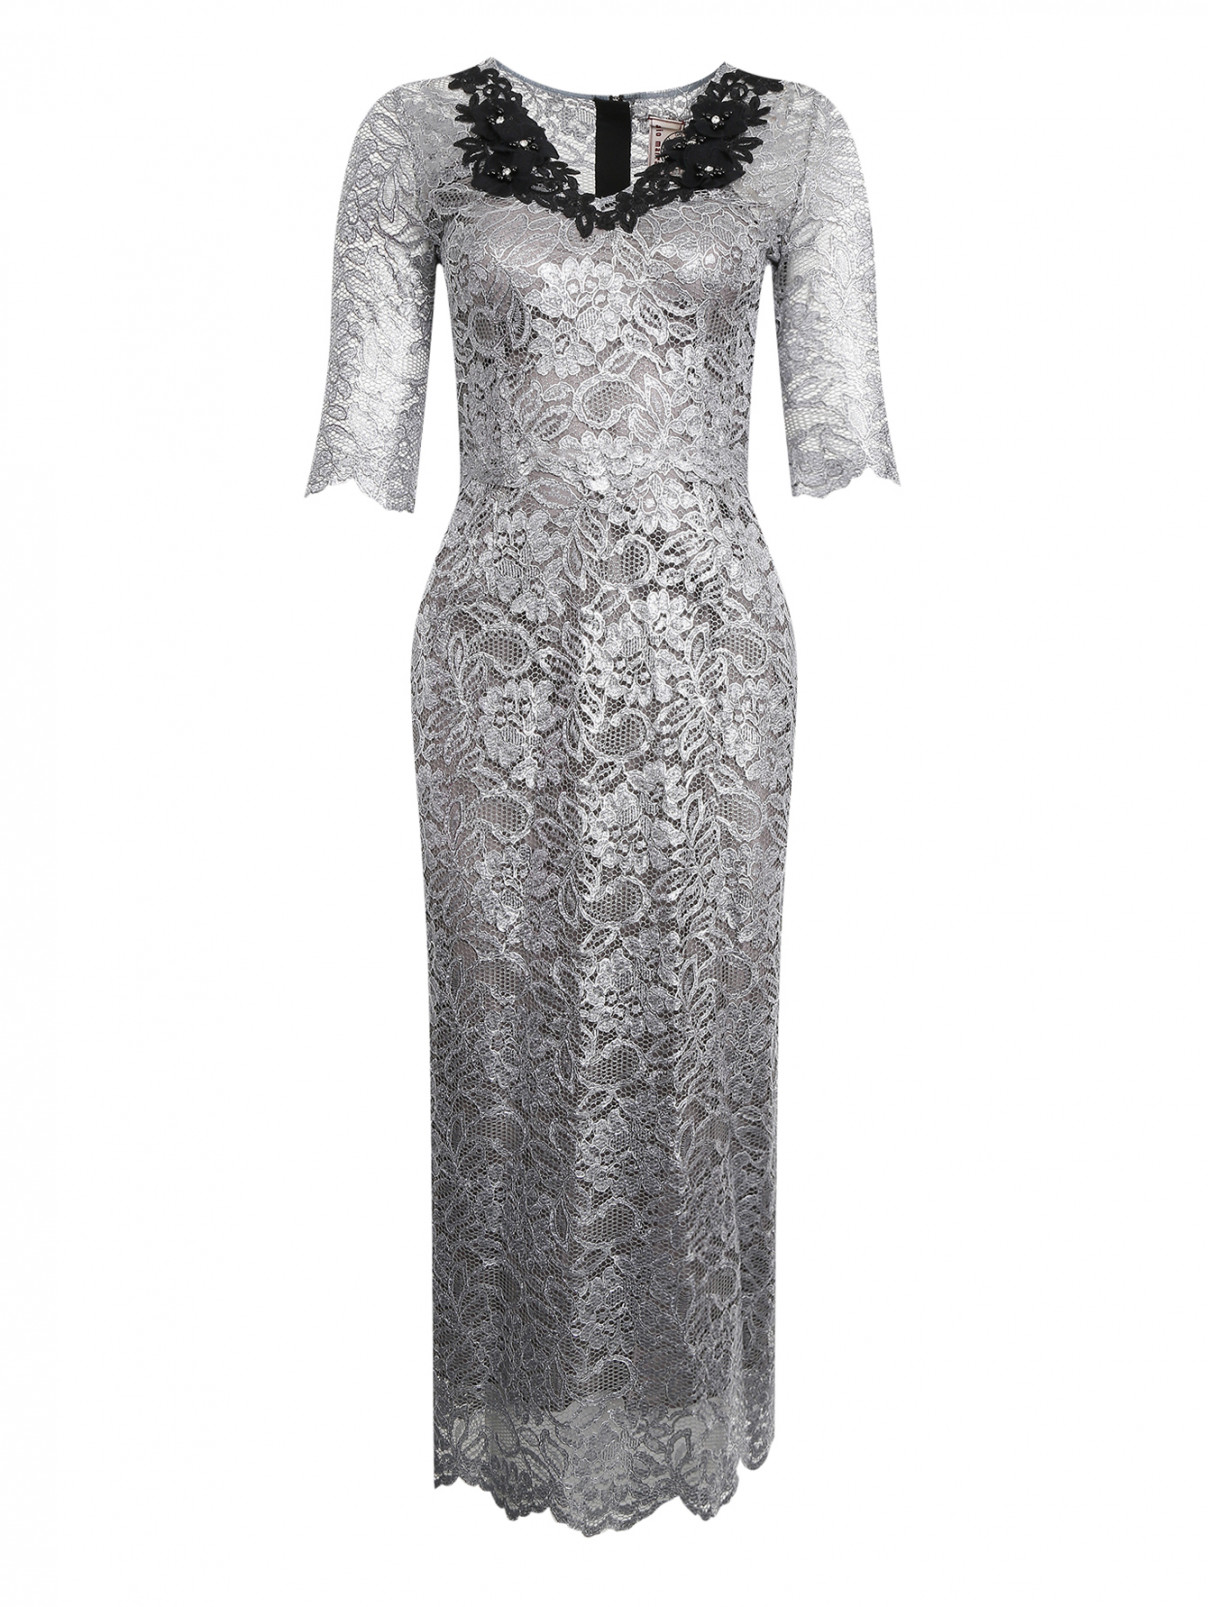 Платье из кружева металлик с контрастной аппликацией Antonio Marras  –  Общий вид  – Цвет:  Серый